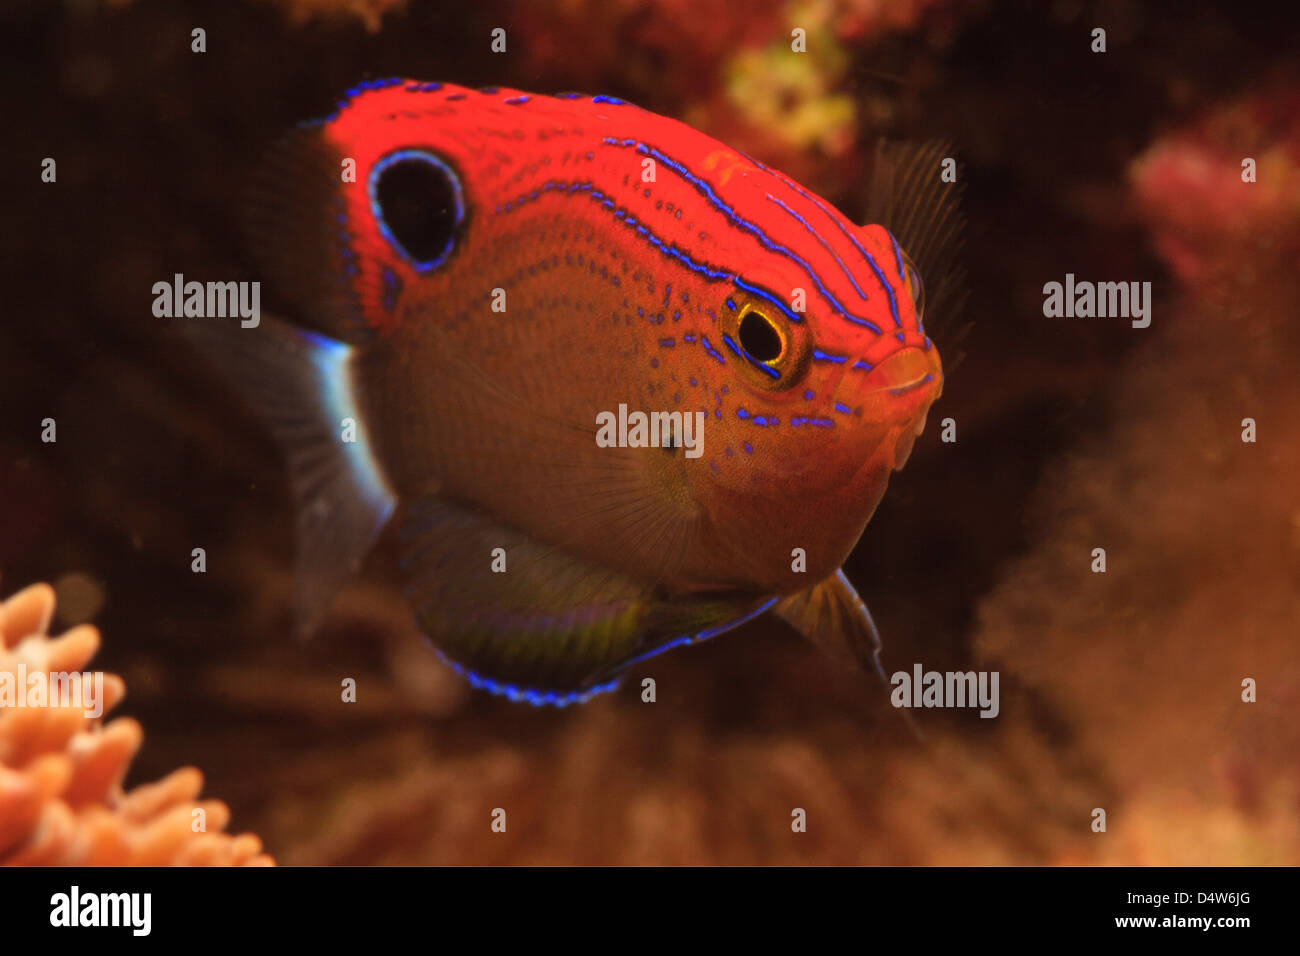 Damselfish swimming in coral reef Stock Photo